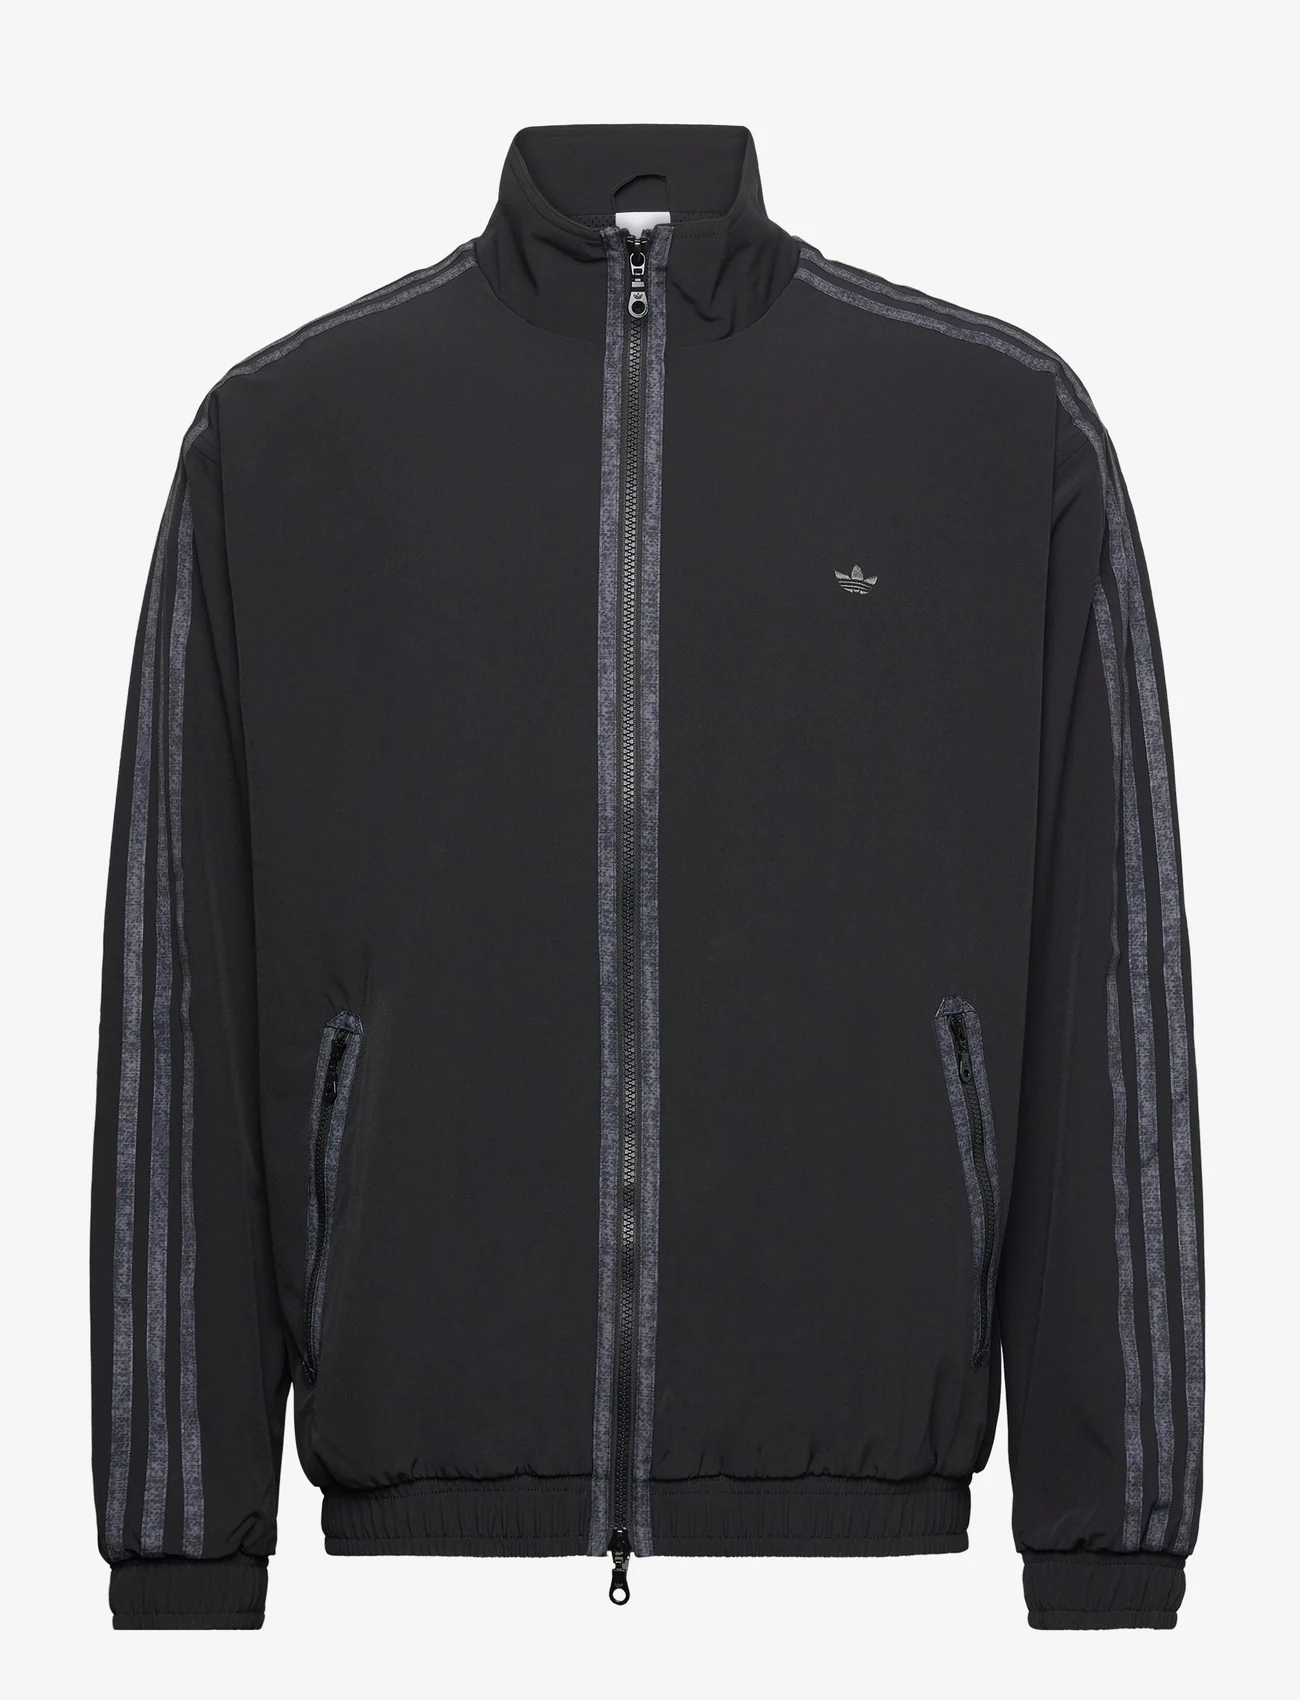 adidas Originals - ADV SHELL JKT - spring jackets - black - 0